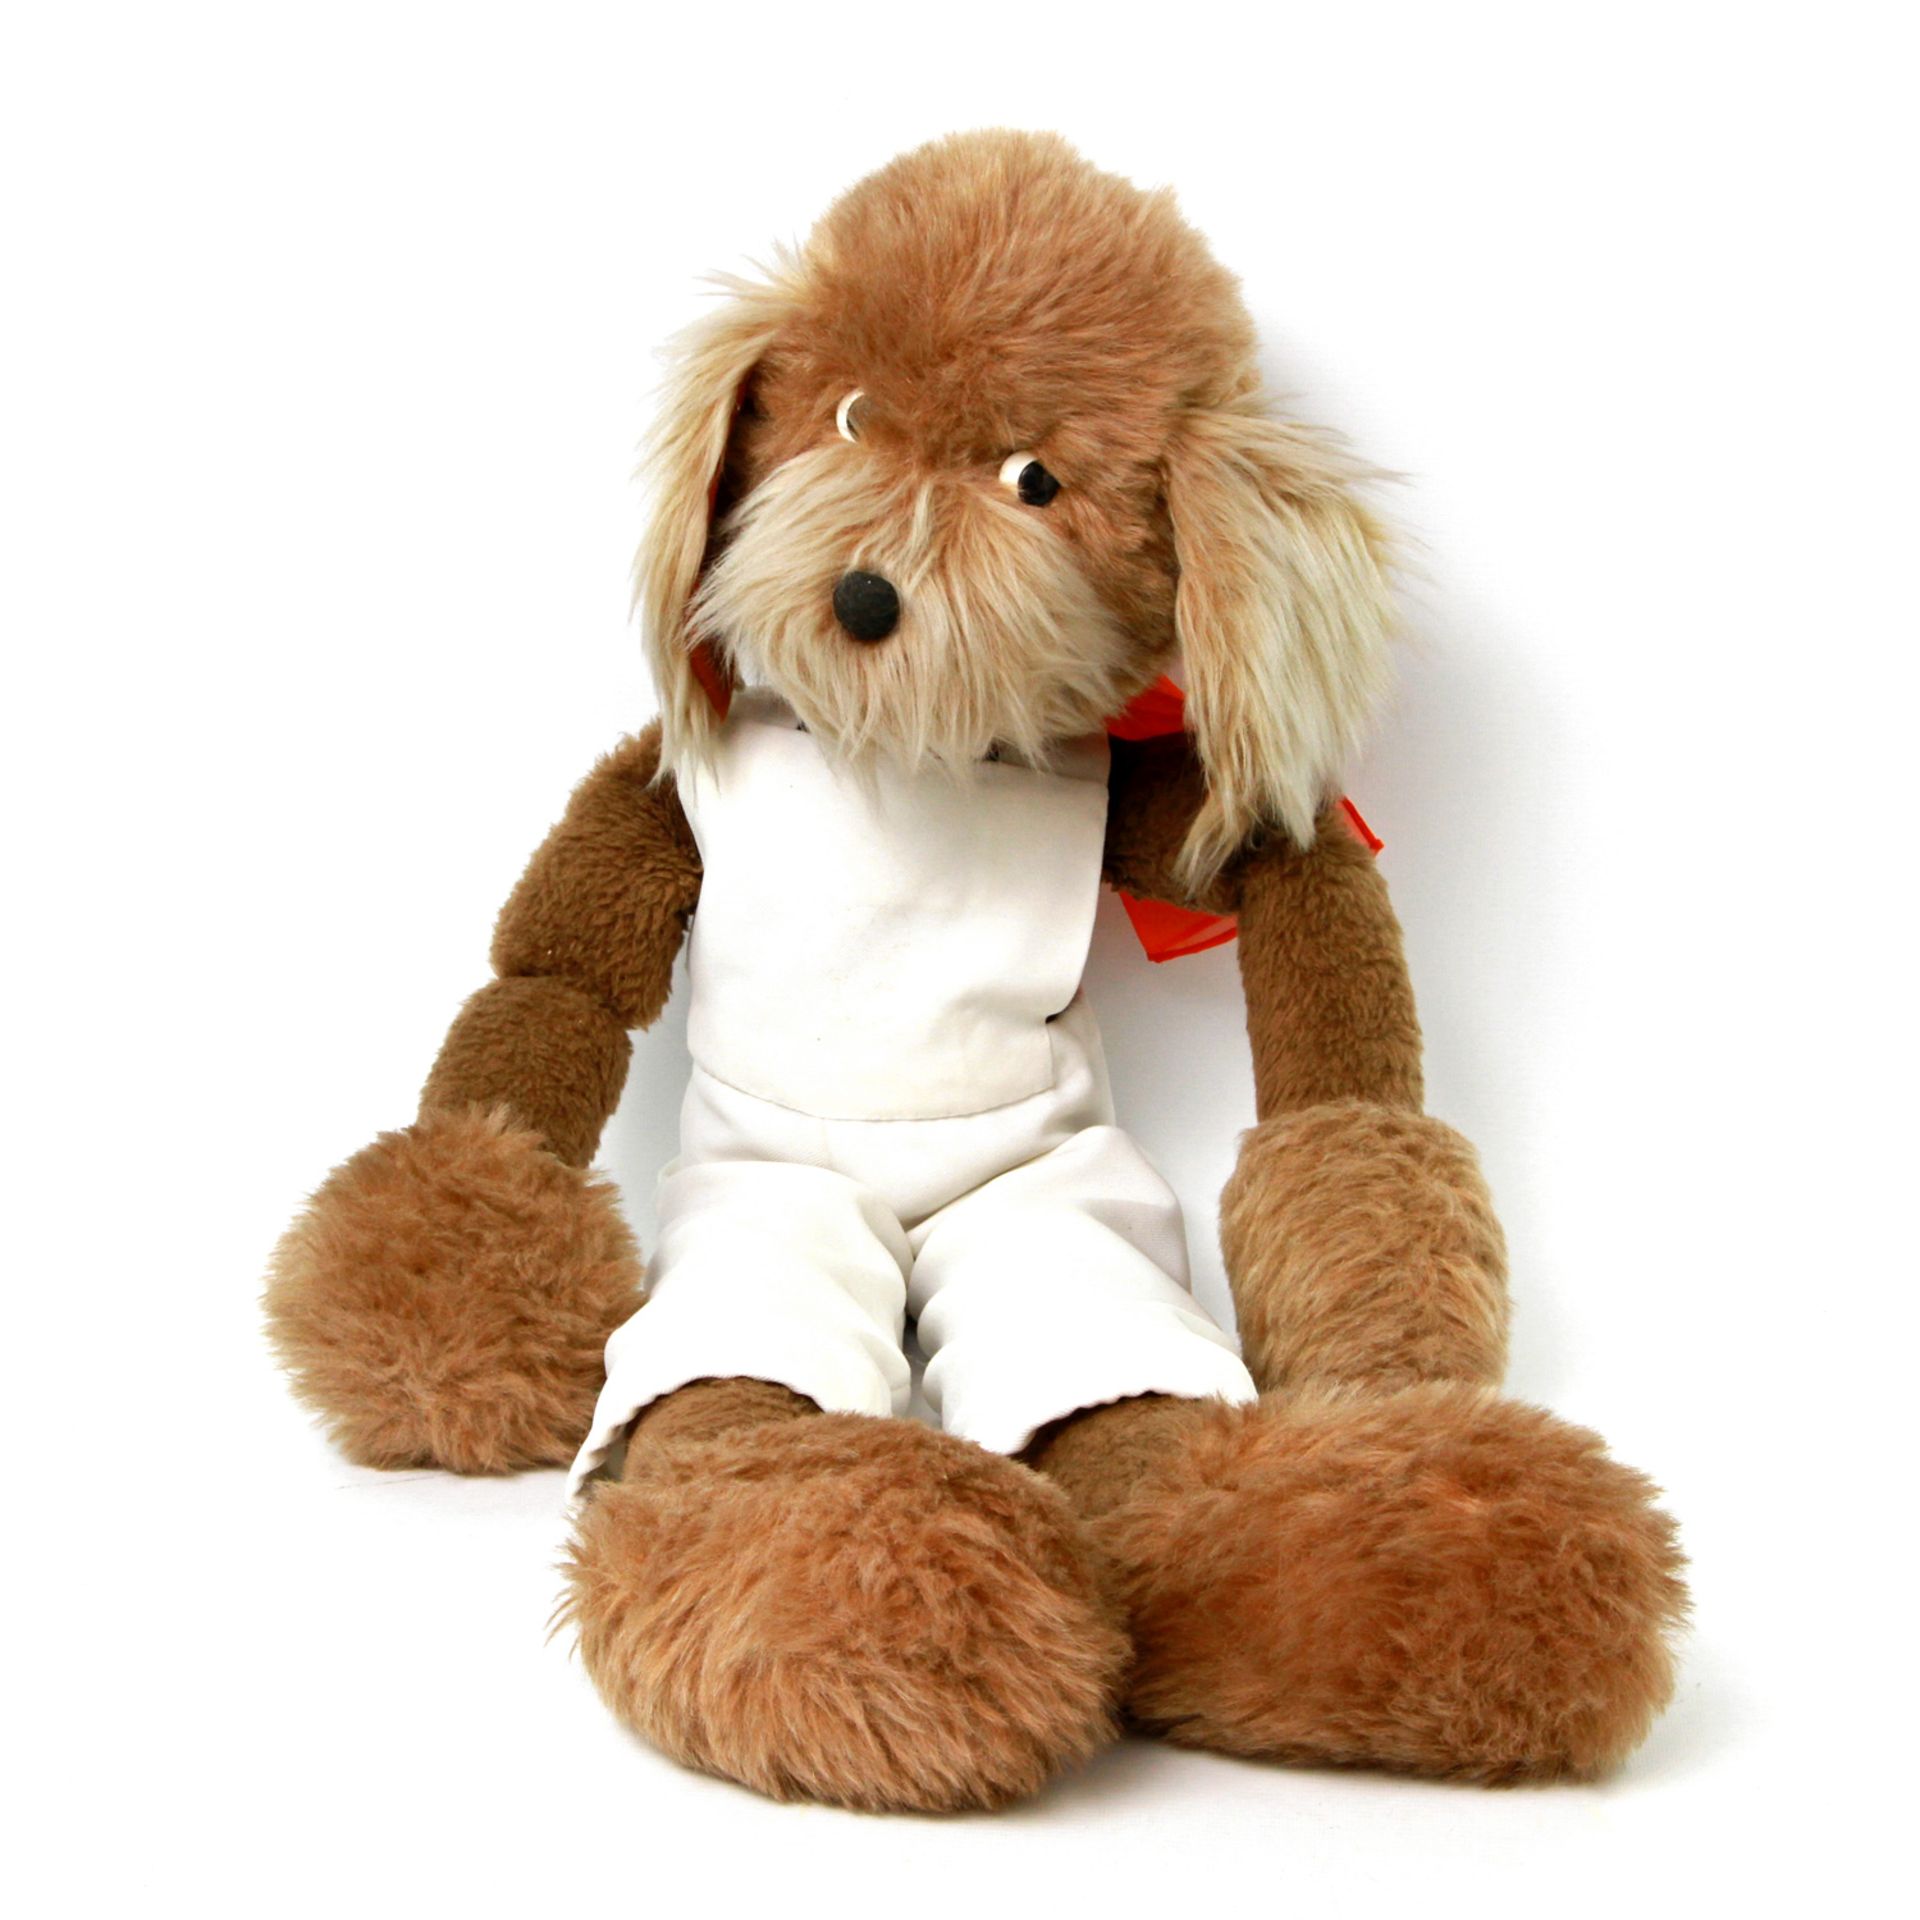 Großer Lulatsch-Hund, 1960er/70er Jahre, bewegliche, locker angenähte Arme und Beine, bekleidet,